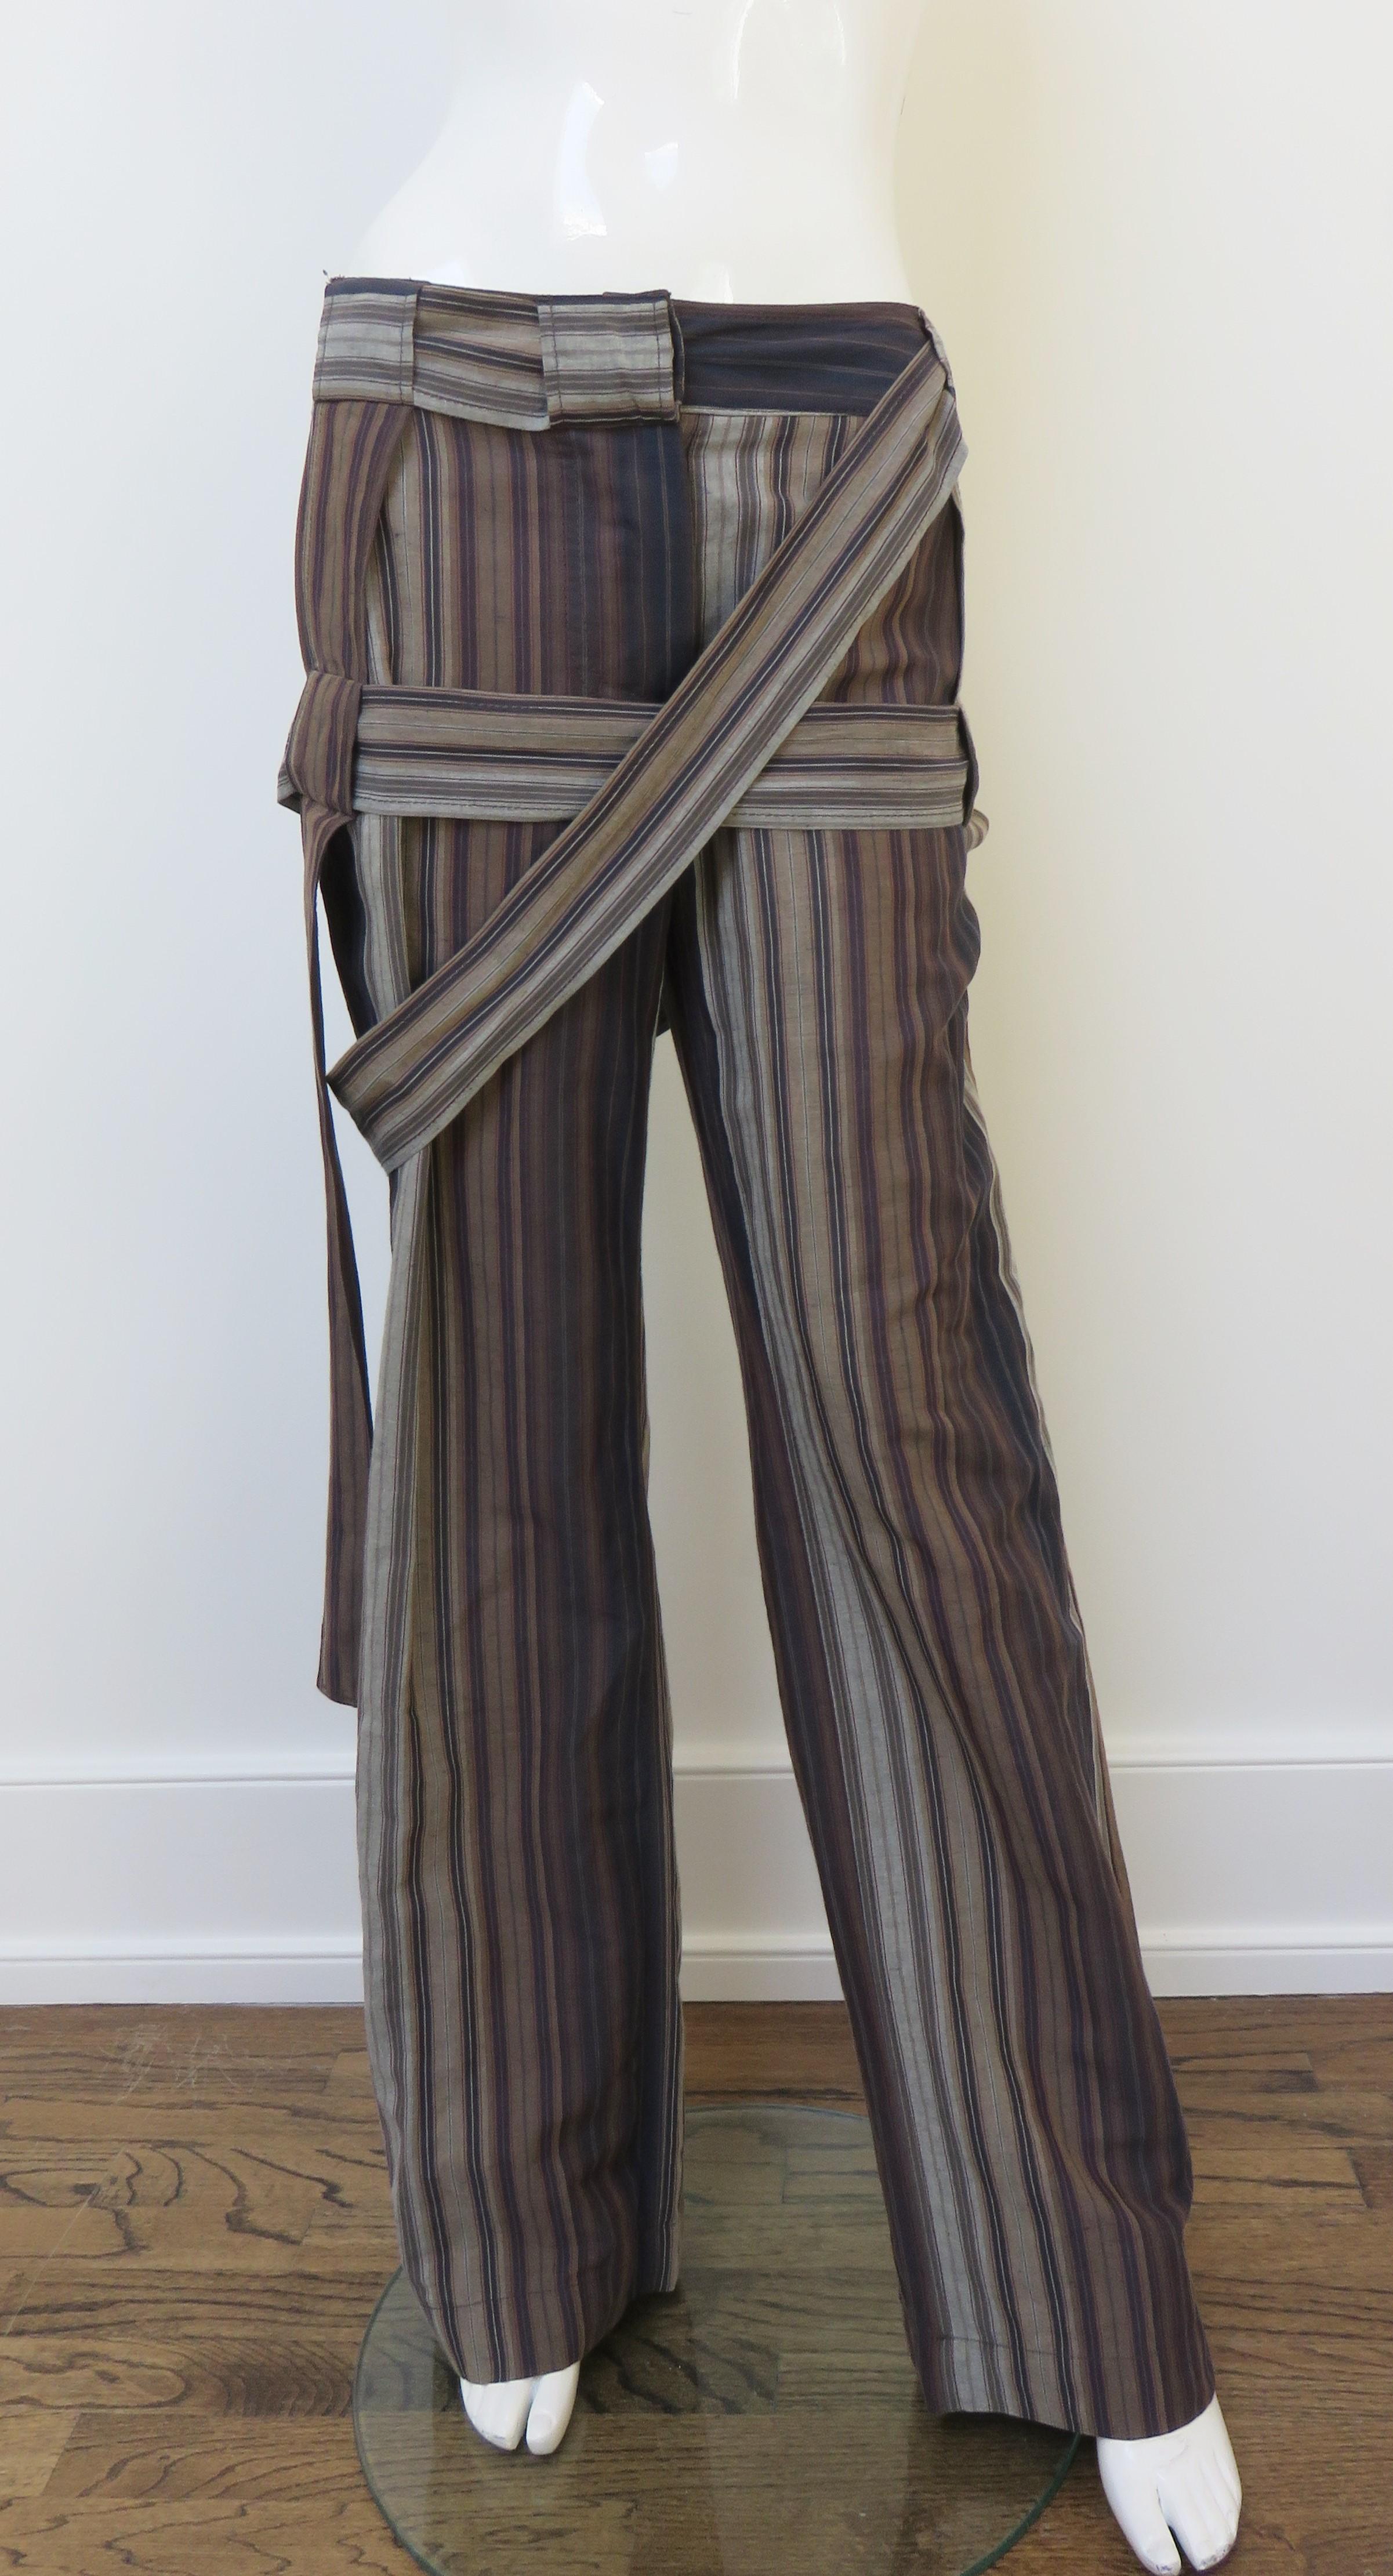 Une fabuleuse paire de pantalons en lin et coton mélangés de la grande et regrettée Vivienne Westwood, avec des rayures verticales marron, grises et noires panachées. Ils sont de taille moyenne avec une ceinture, une braguette boutonnée sur le